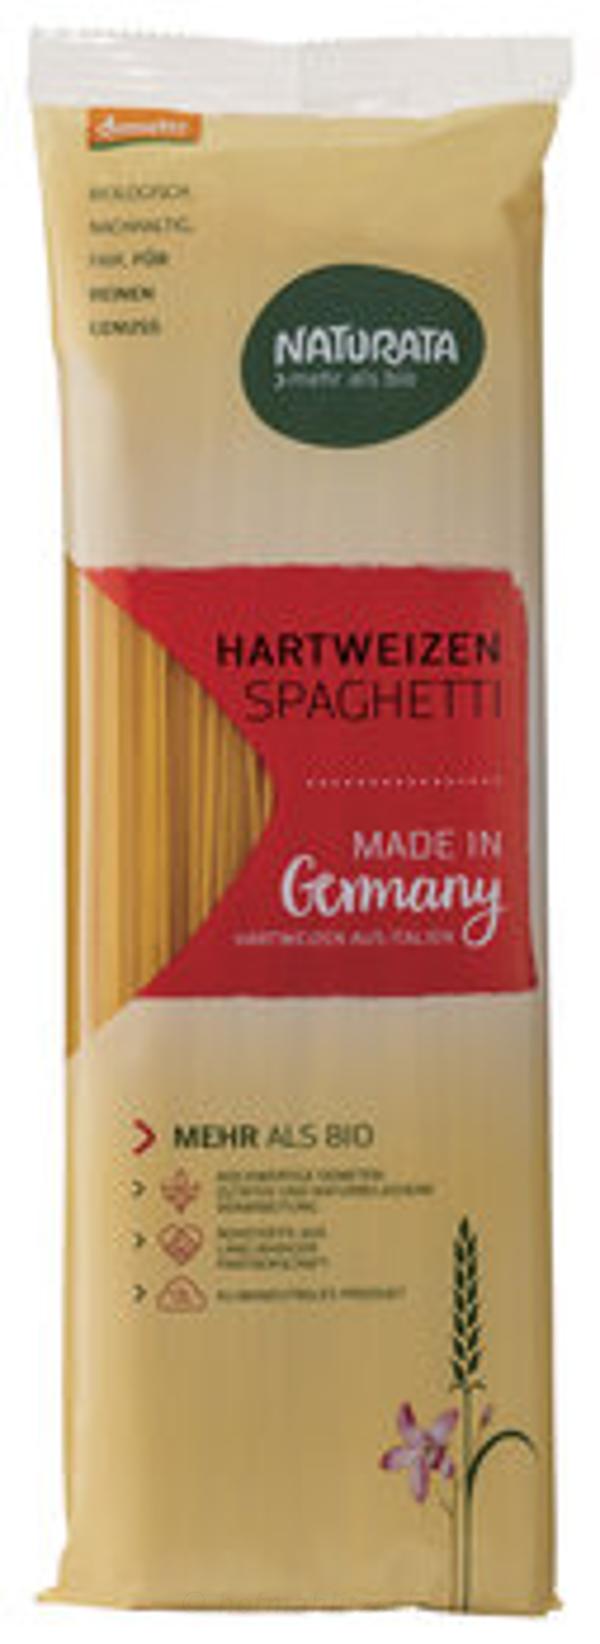 Produktfoto zu Hartweizen-Spaghetti hell